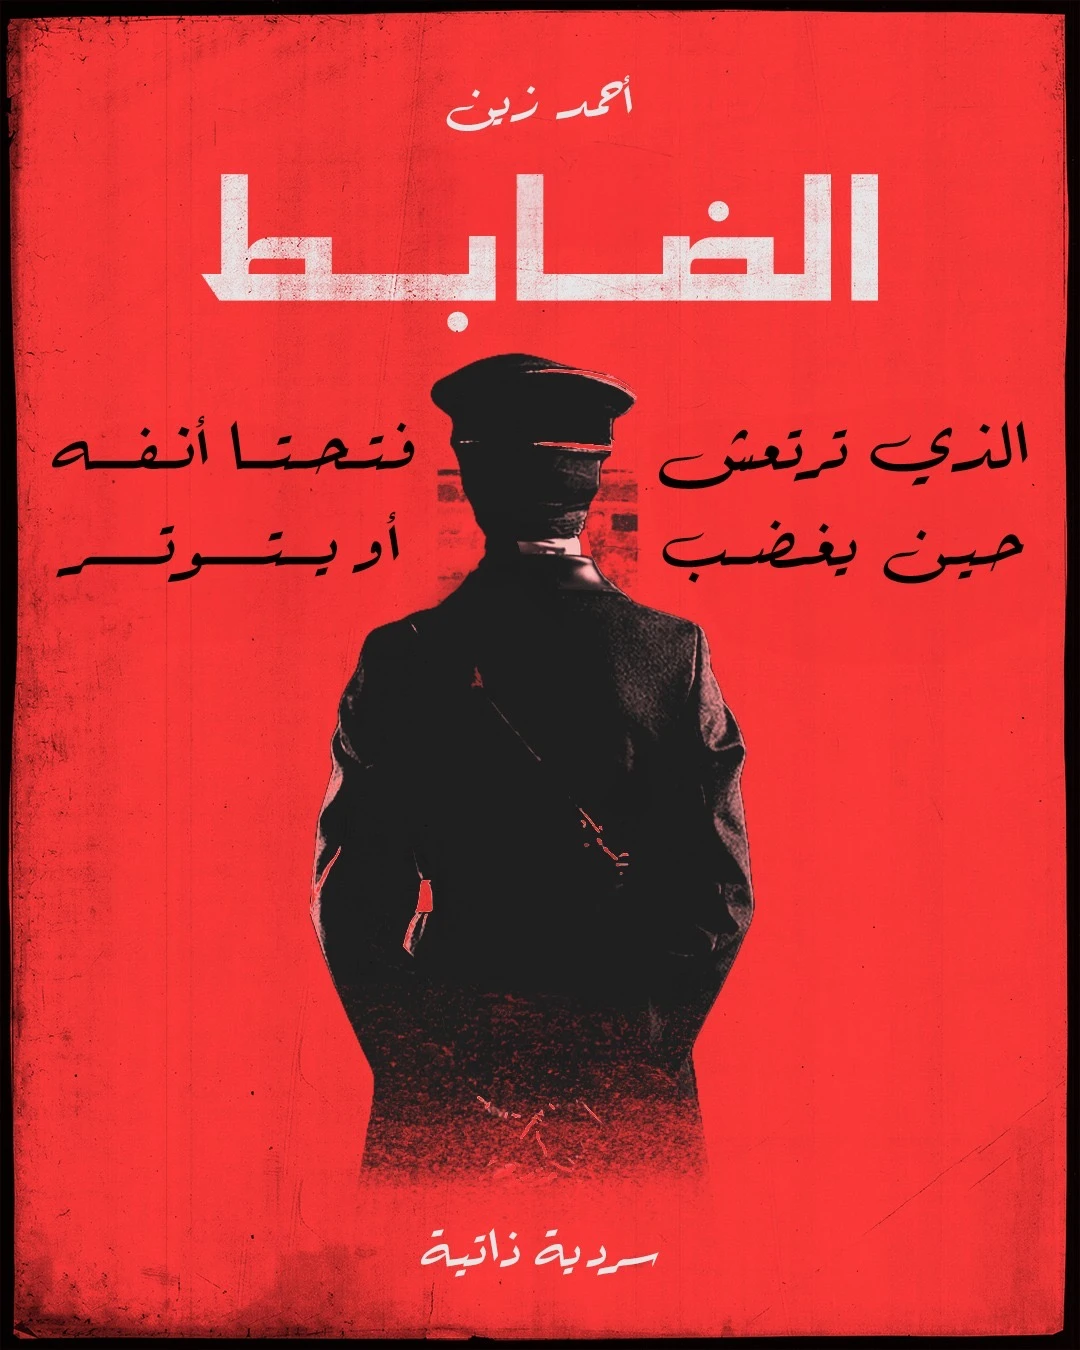 كتاب يعكس الملامح السياسية في المجتمع المصري والعربي